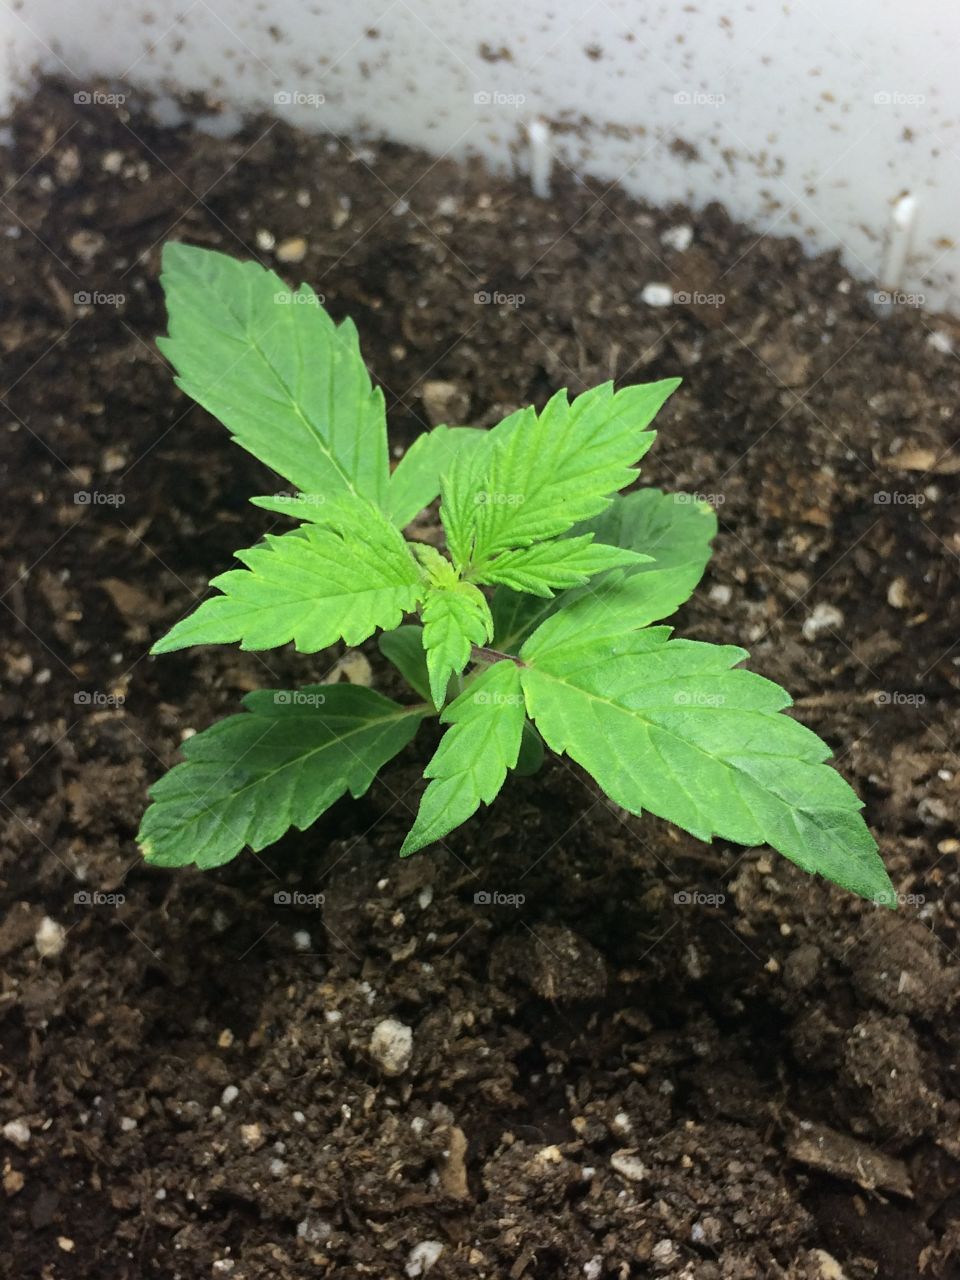 Weed marihuana beautiful plants green 420 cultivo indoor bajo consumó marijuana 